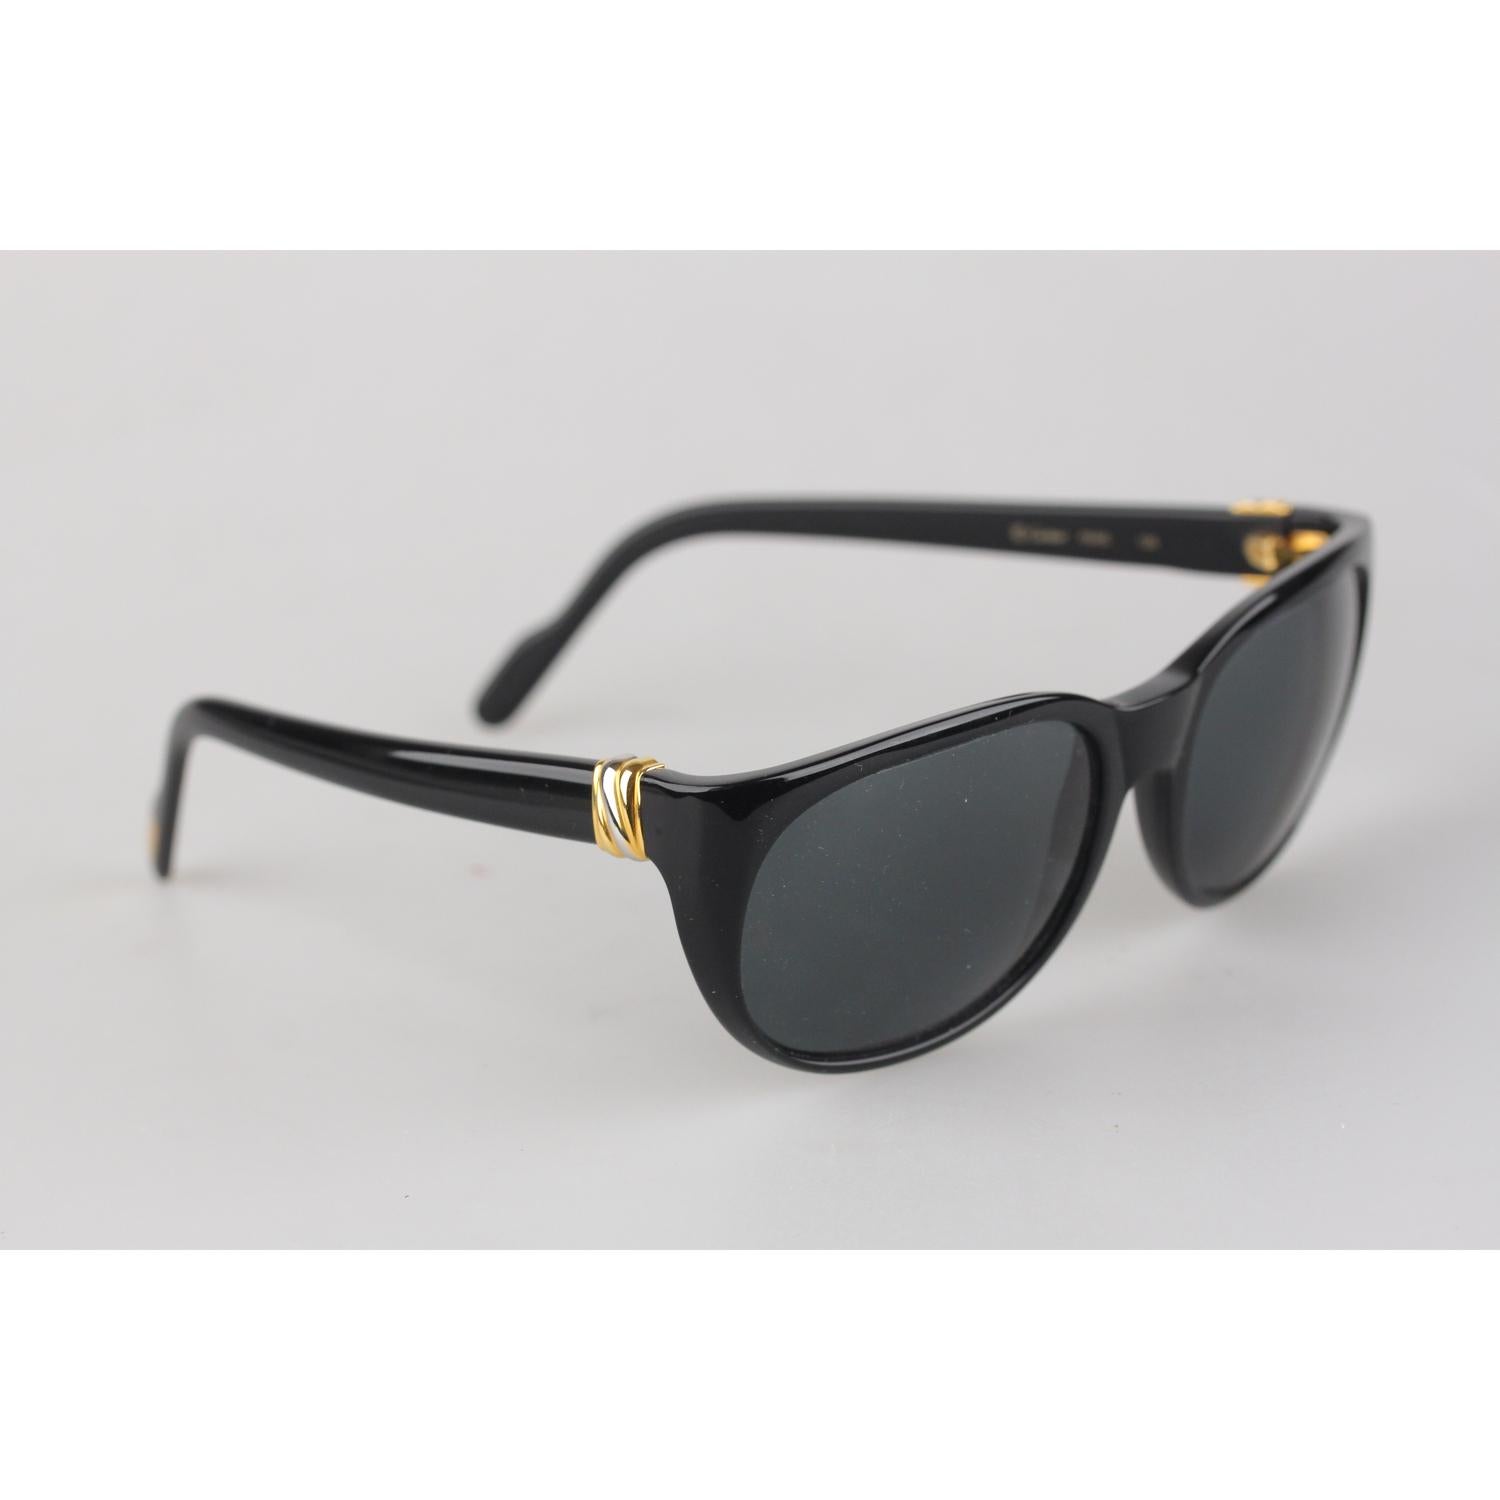 Cartier Paris Black Unisex Sunglasses Noir T8200184 New Old Stock 1